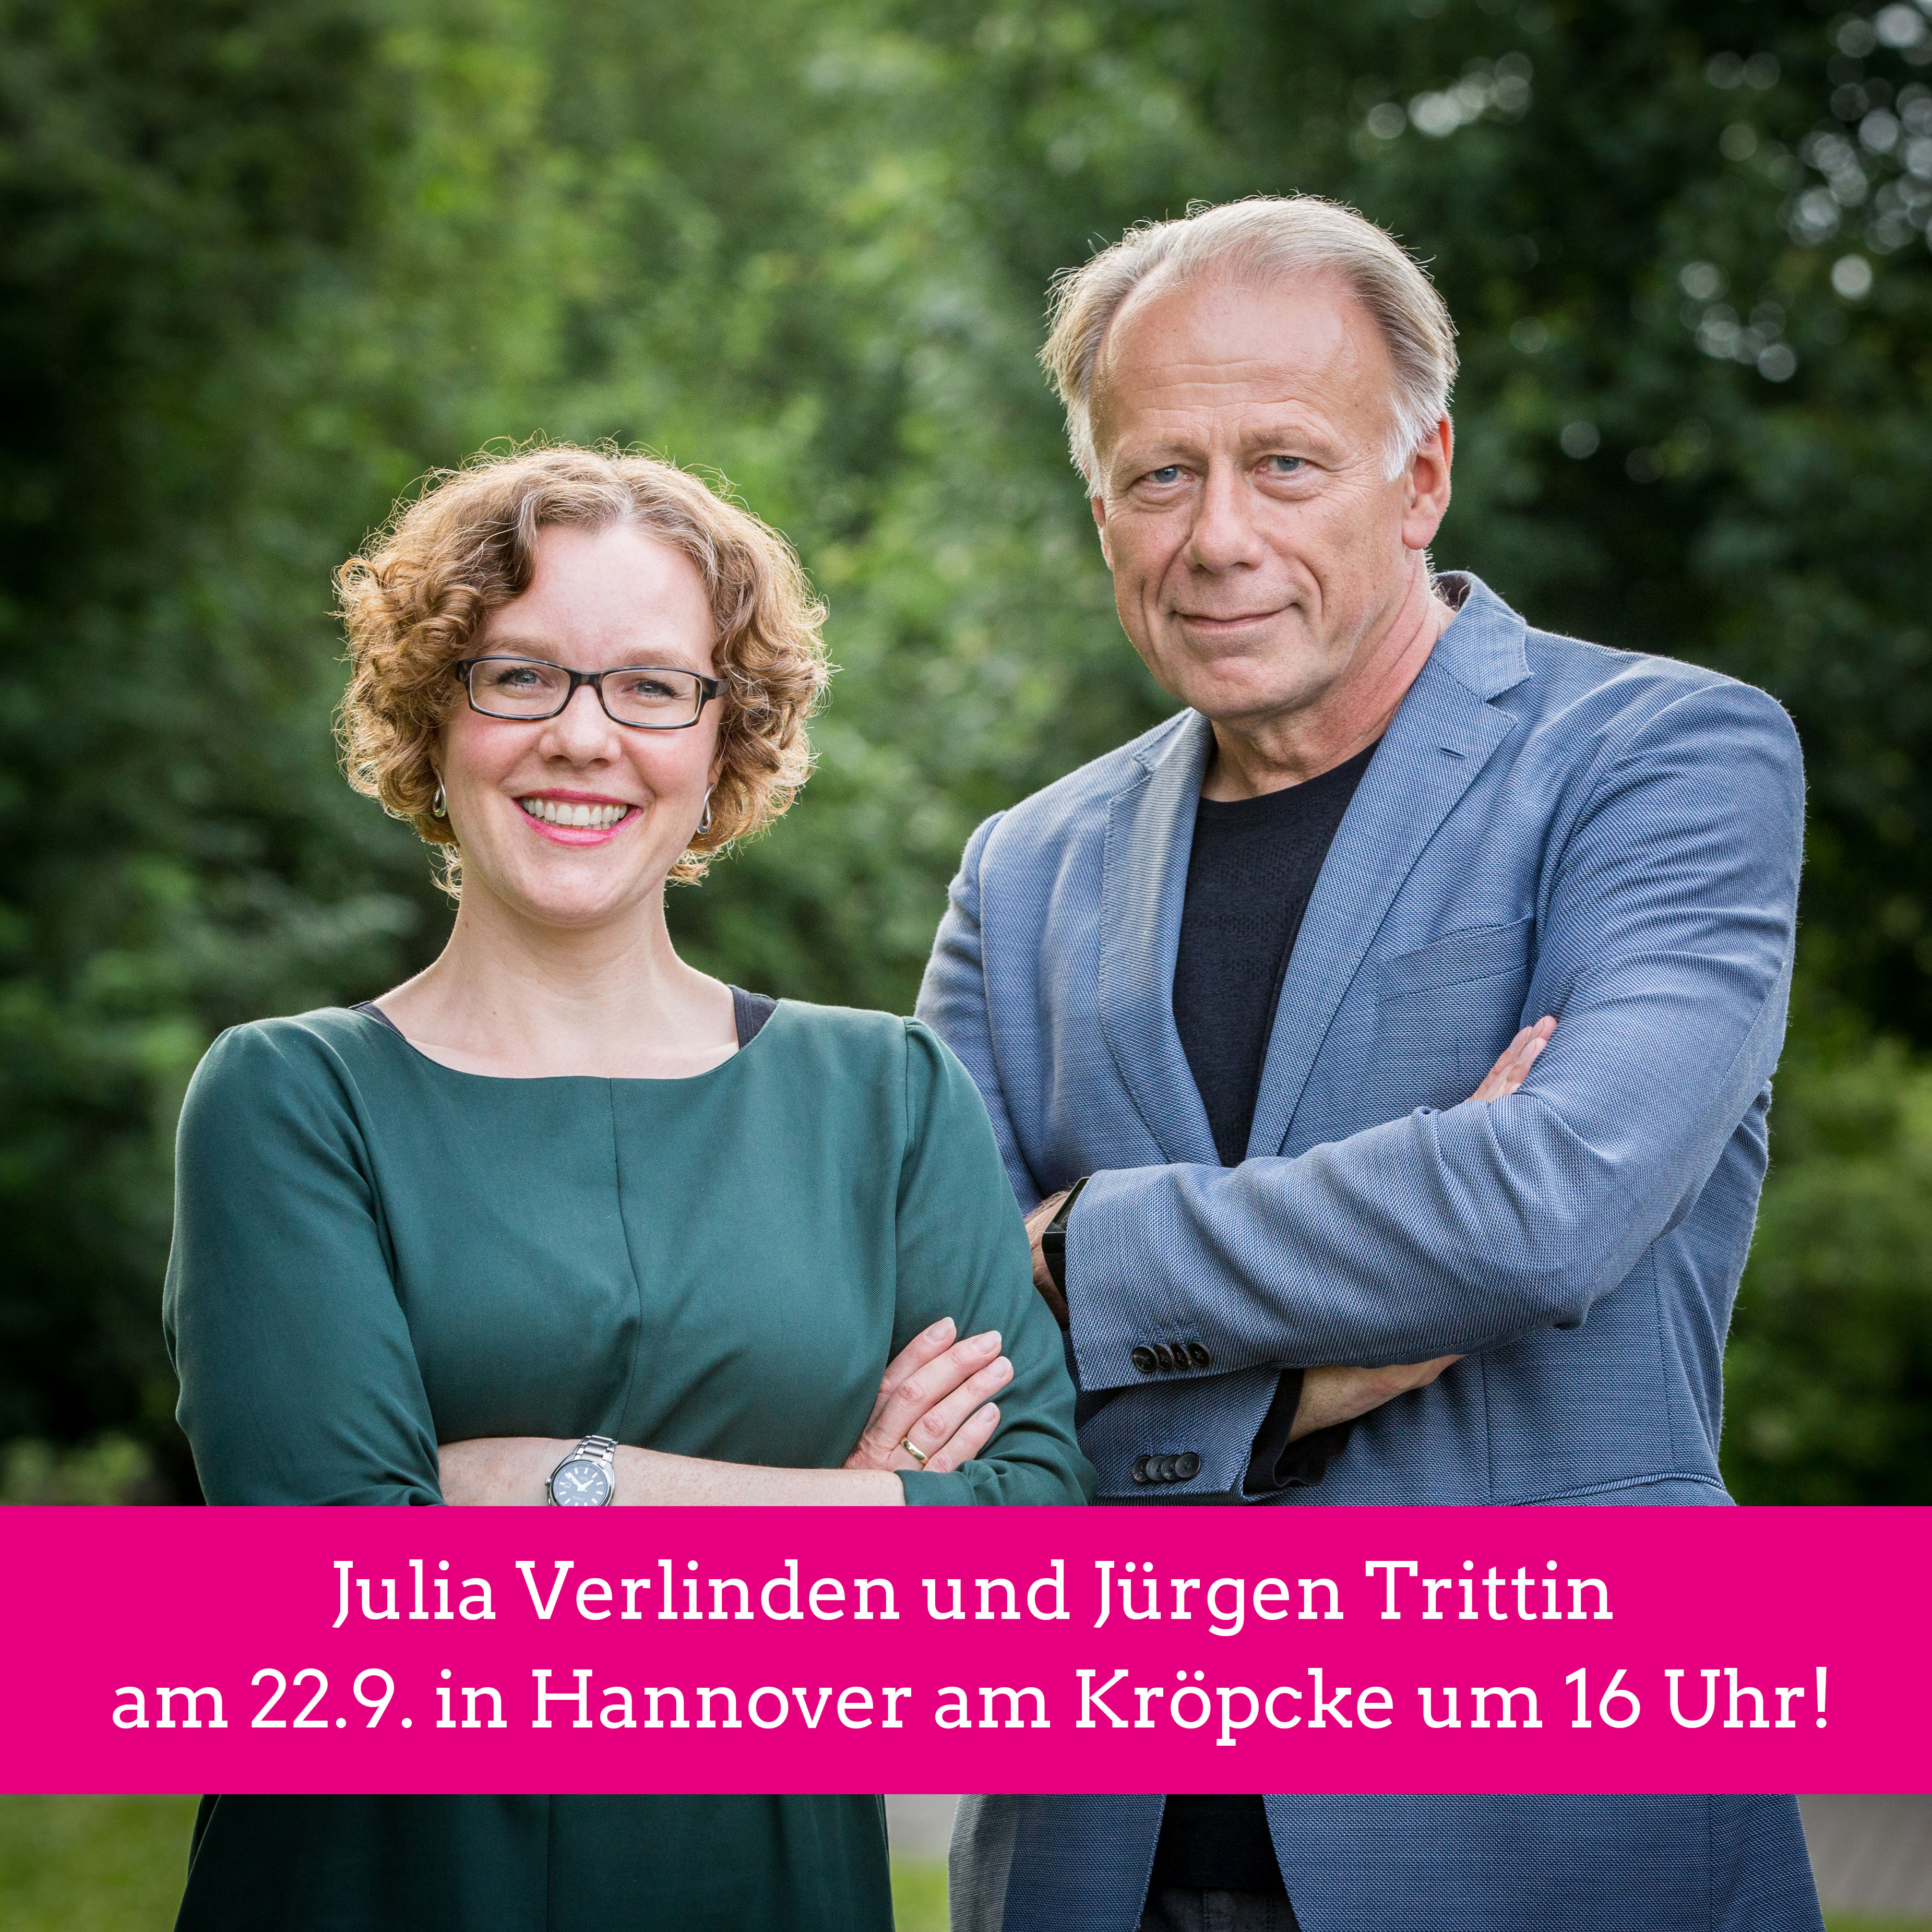 Julia Verlinden und Jürgen Trittin, Ankündigung Wahlkampfhöhepunkt